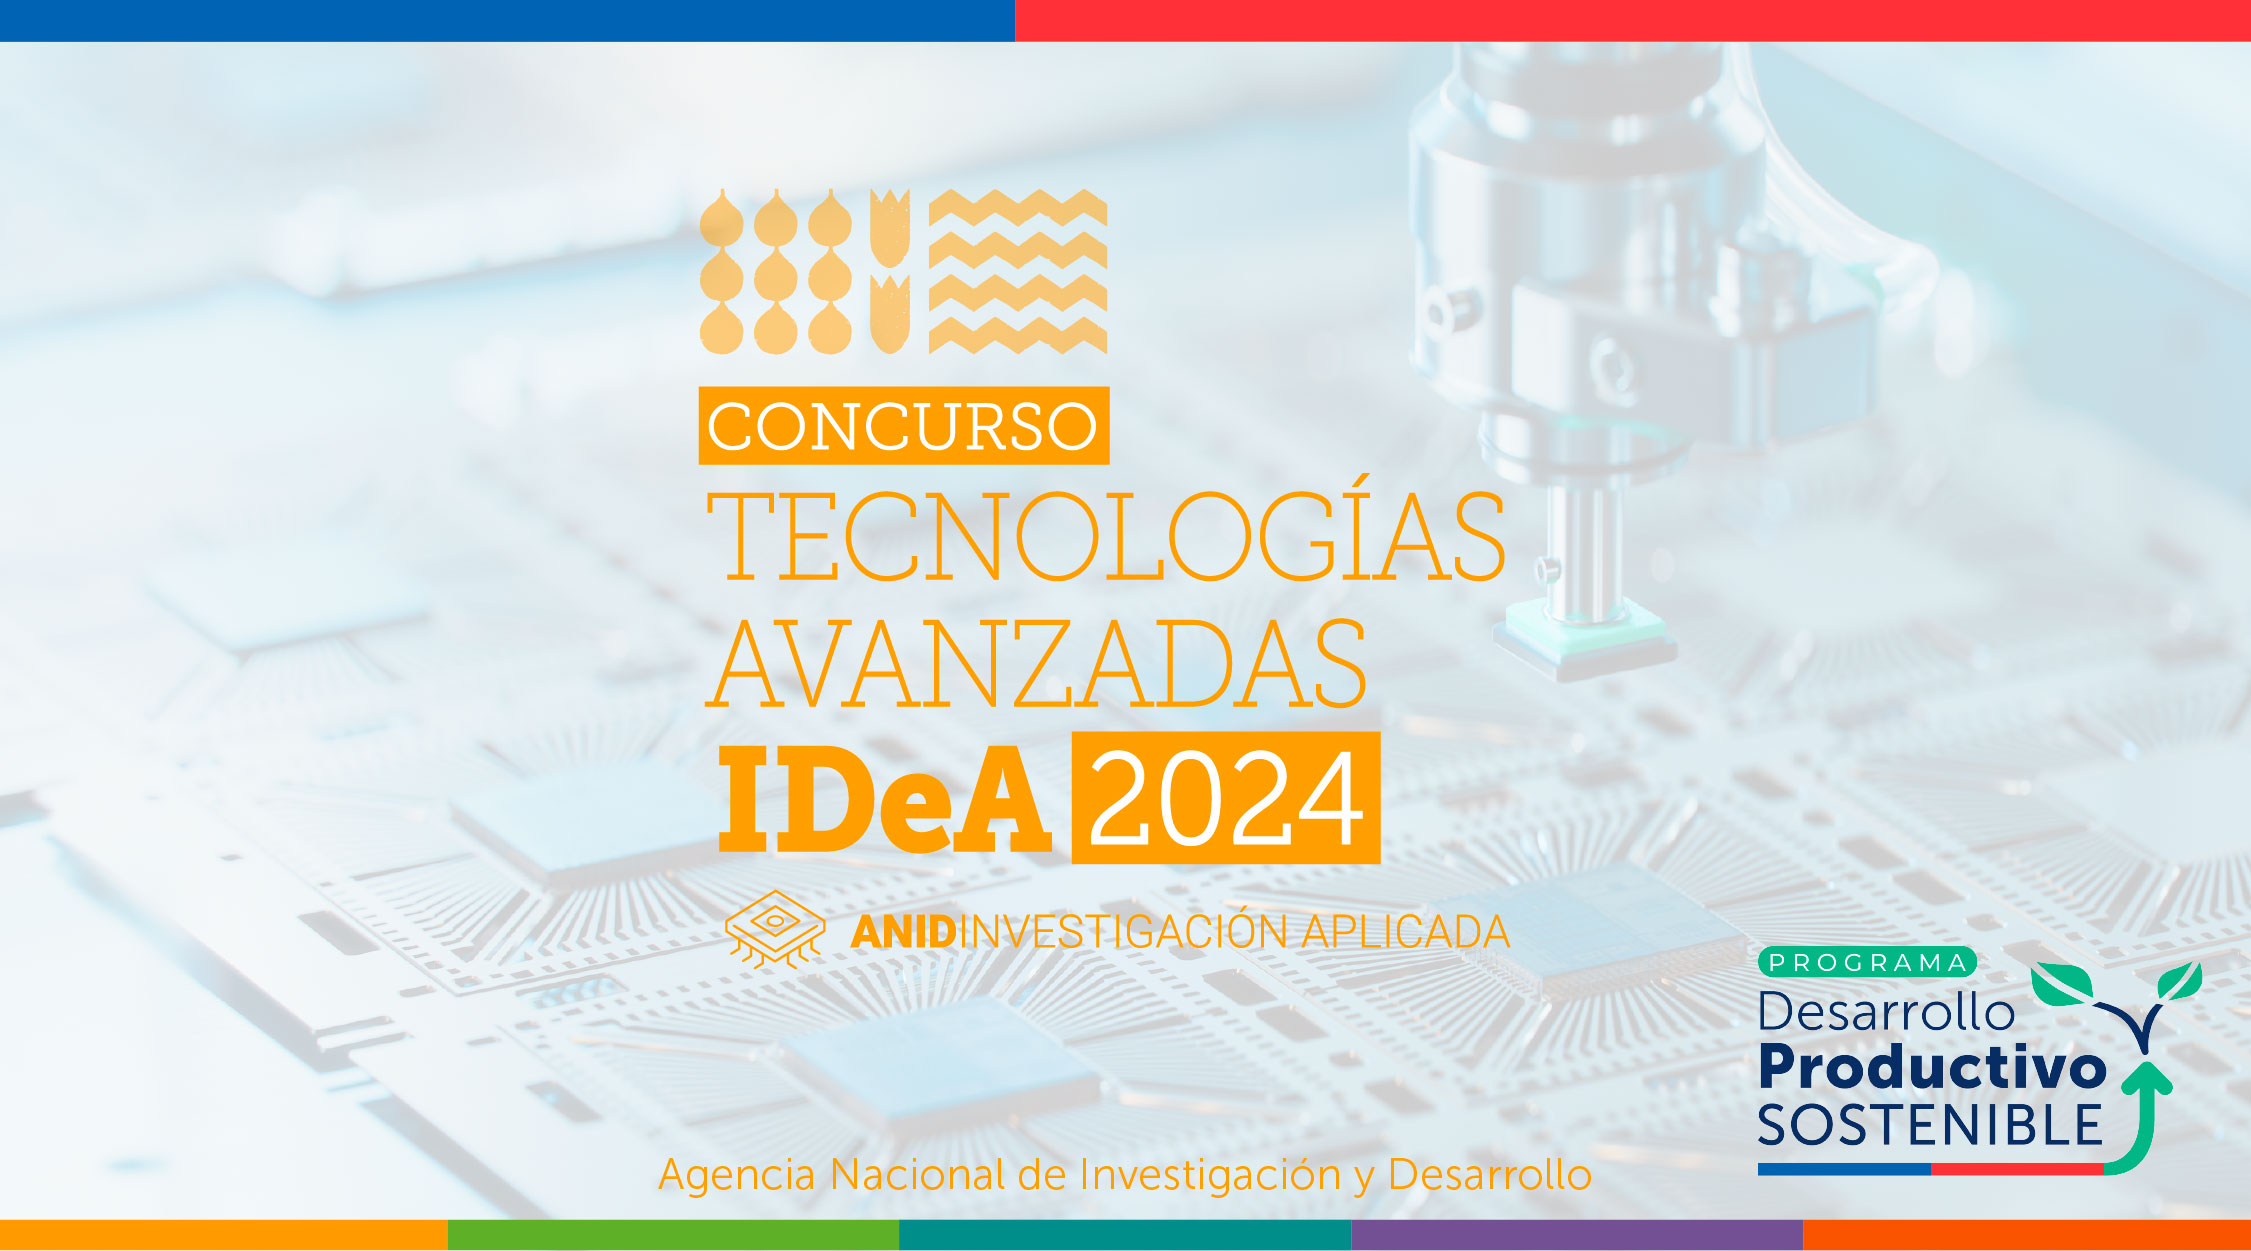 Concurso Tecnologías Avanzadas IDeA 2024 - ANID Investigación Aplicada